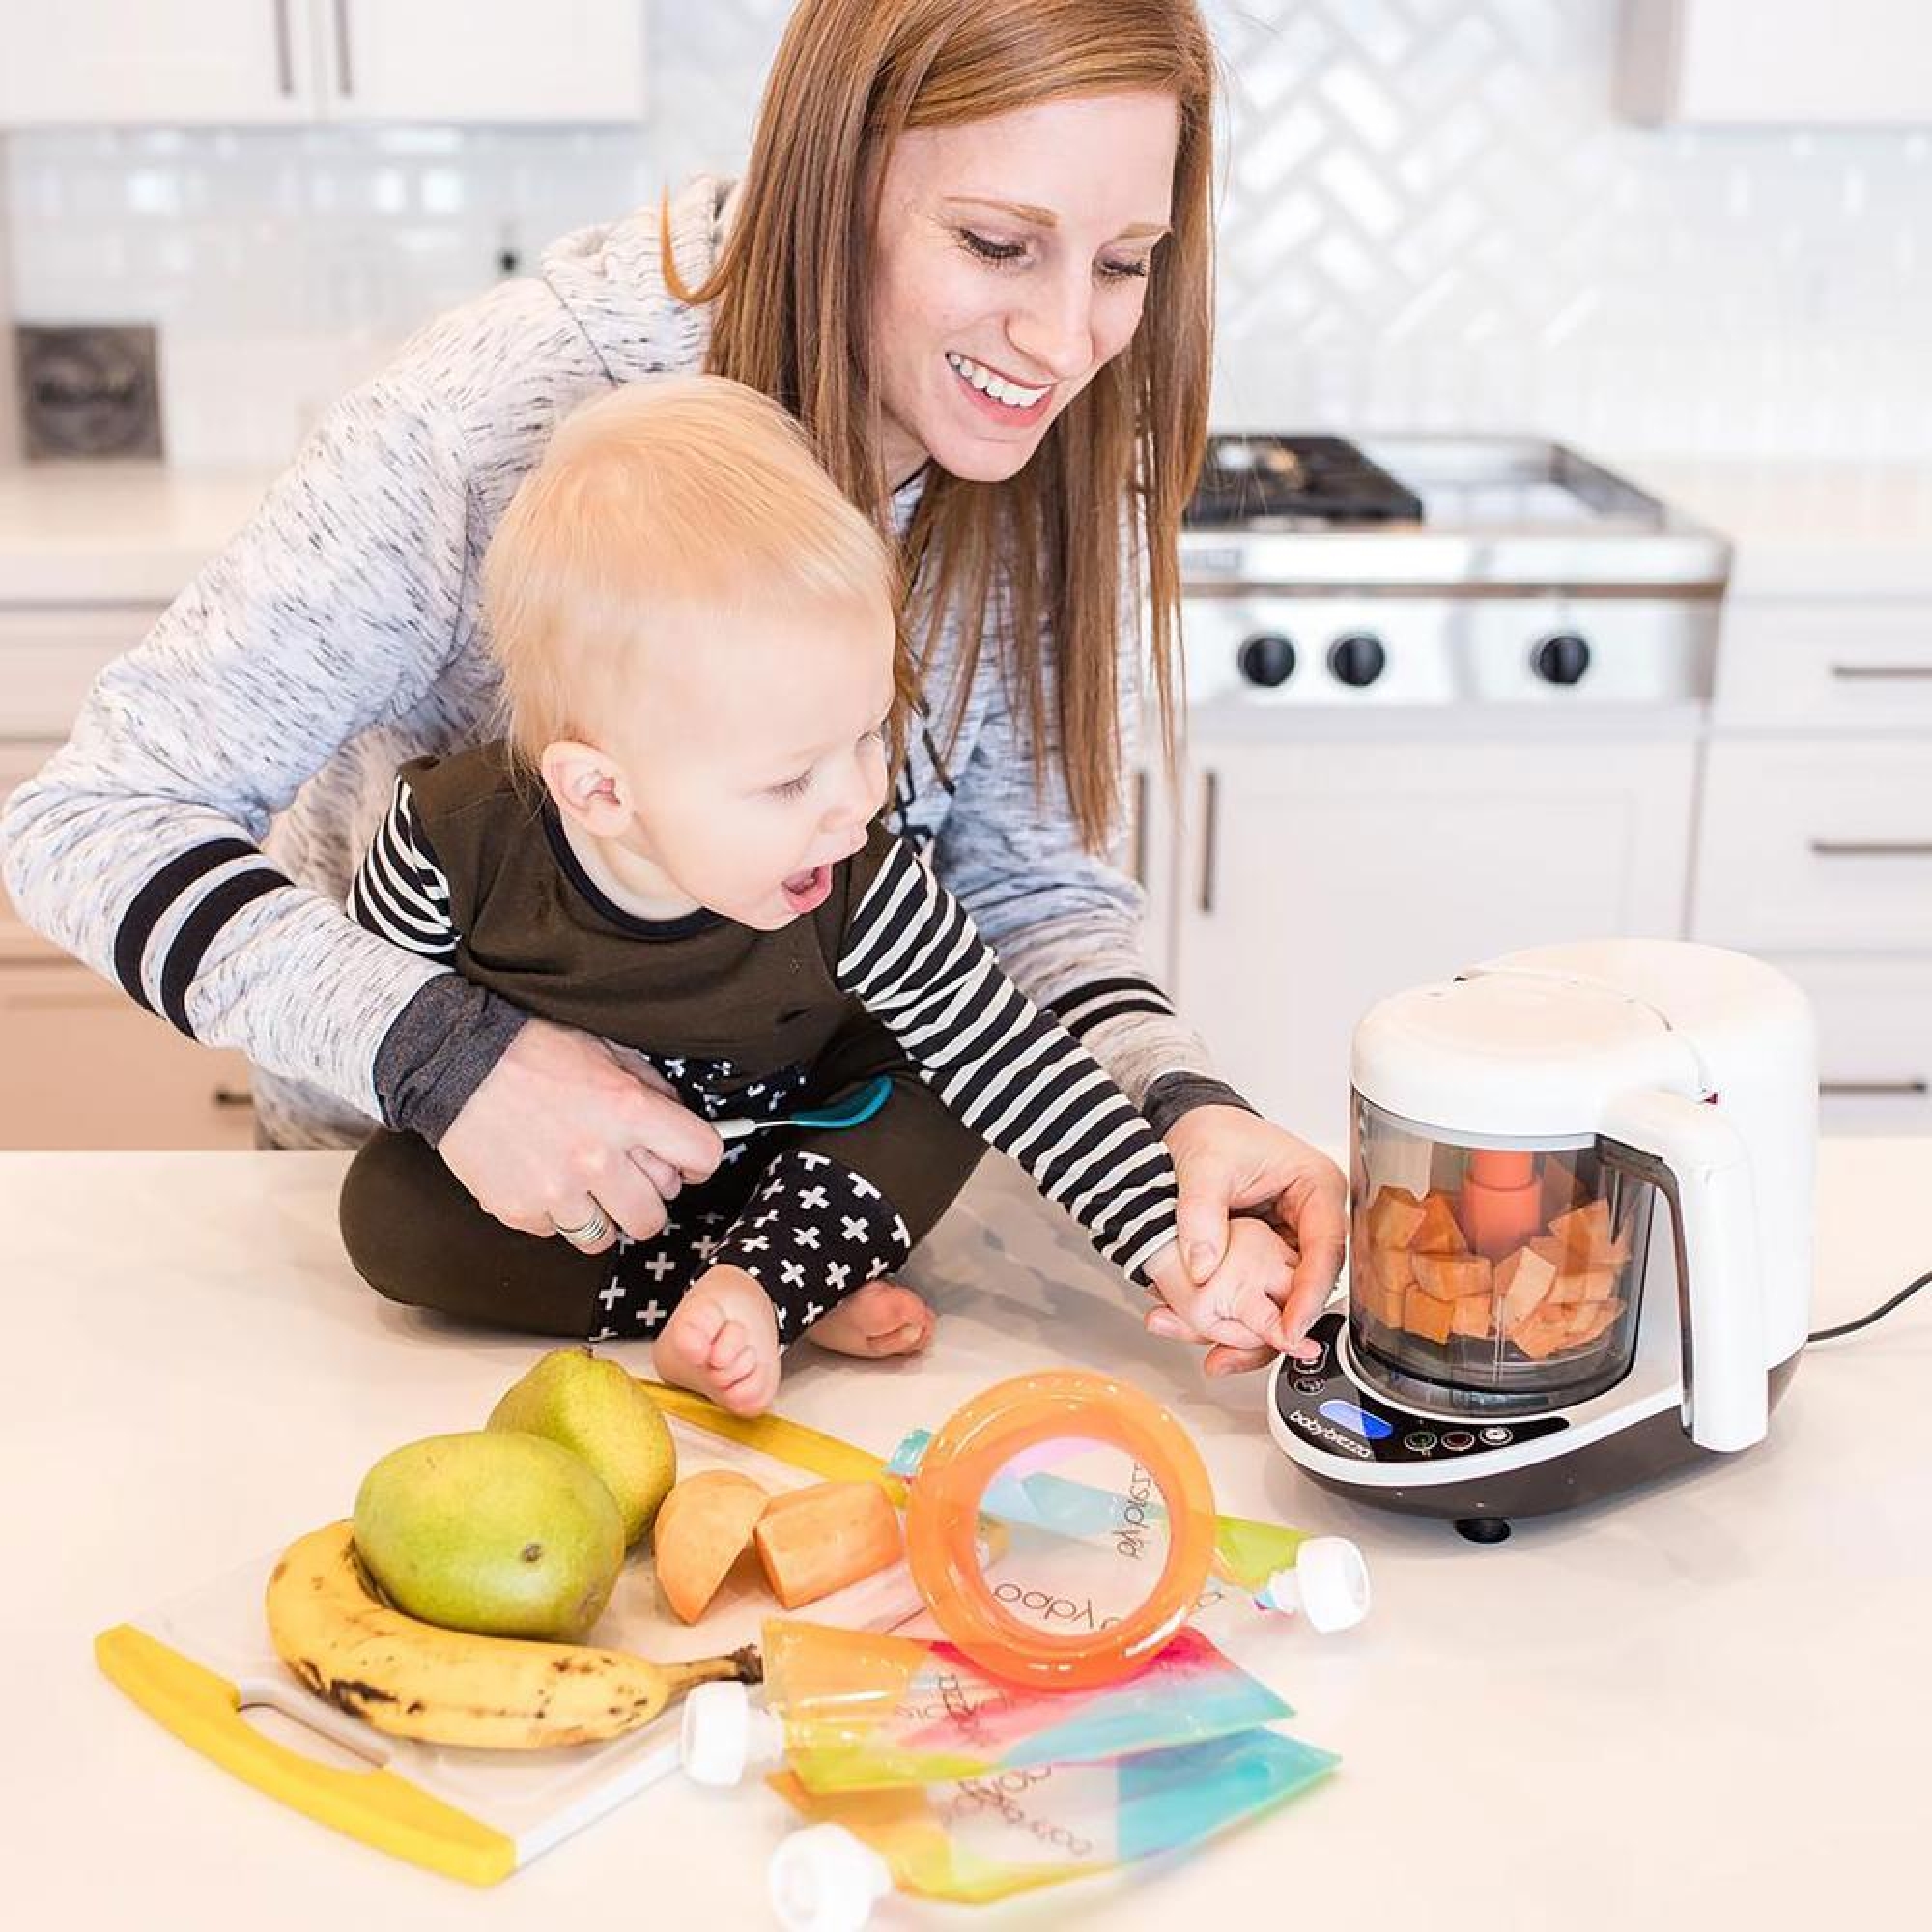 Robots bébé : cuiseur, mixeur et accessoire pour les repas de bébé